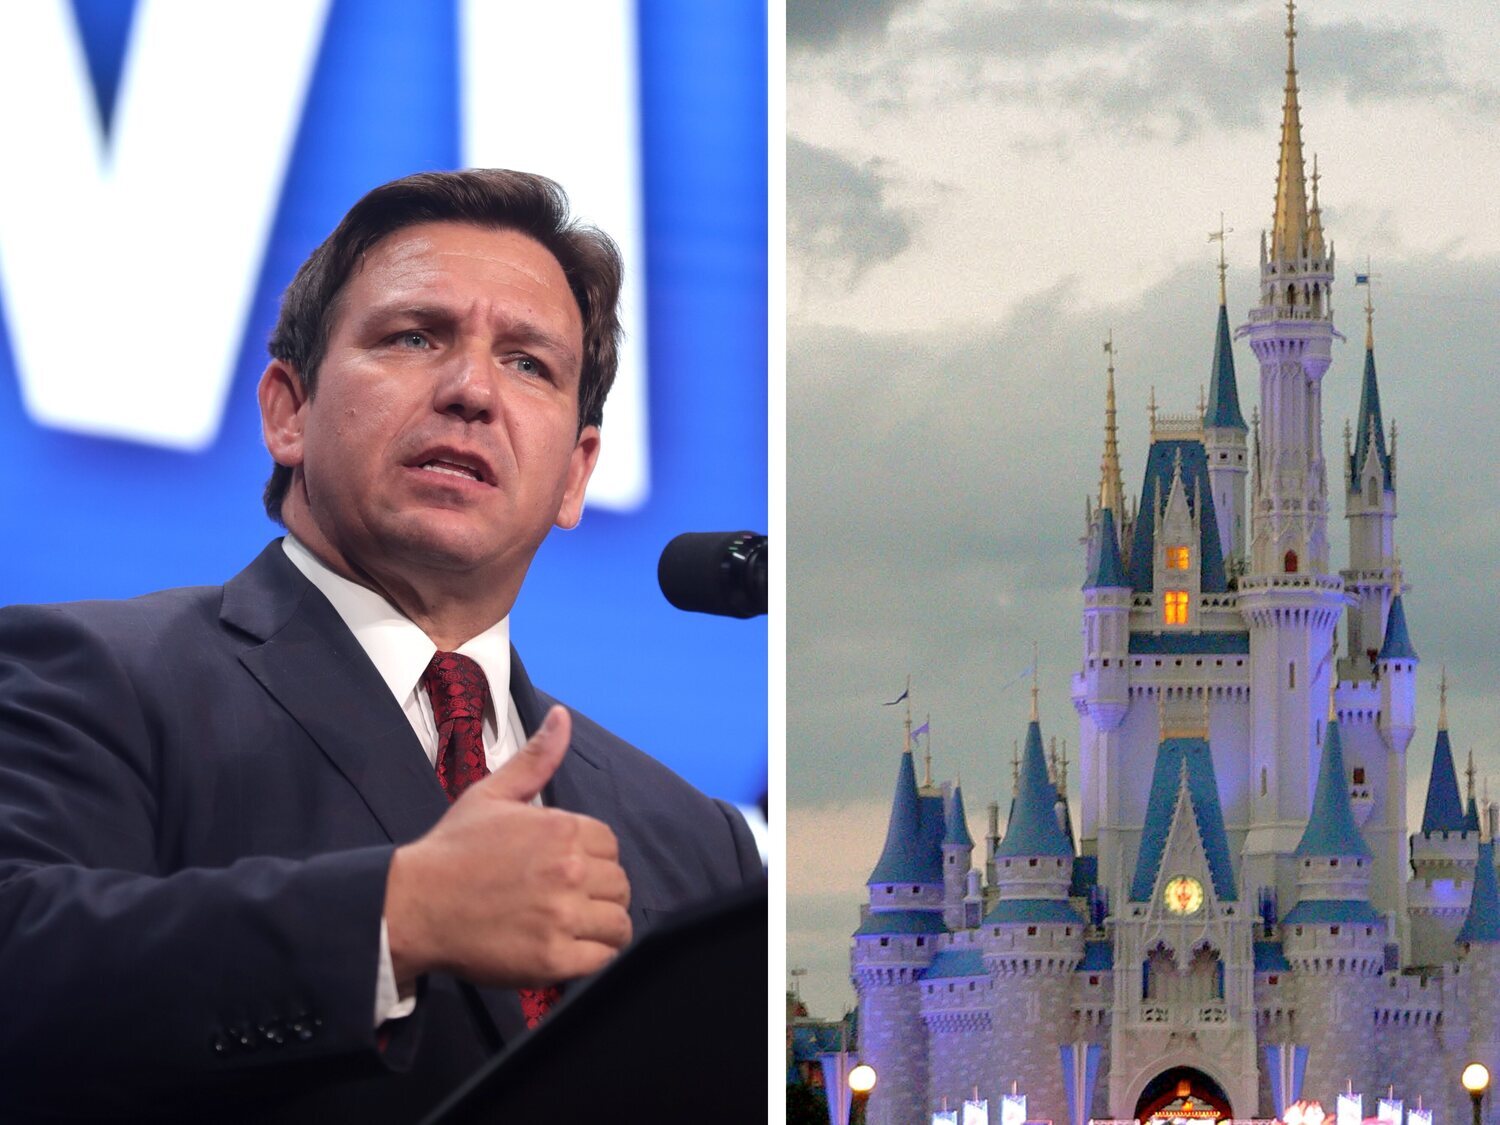 El gobernador ultra de Florida, Ron DeSantis, toma el control de Disney World por su oposición a sus políticas homófobas